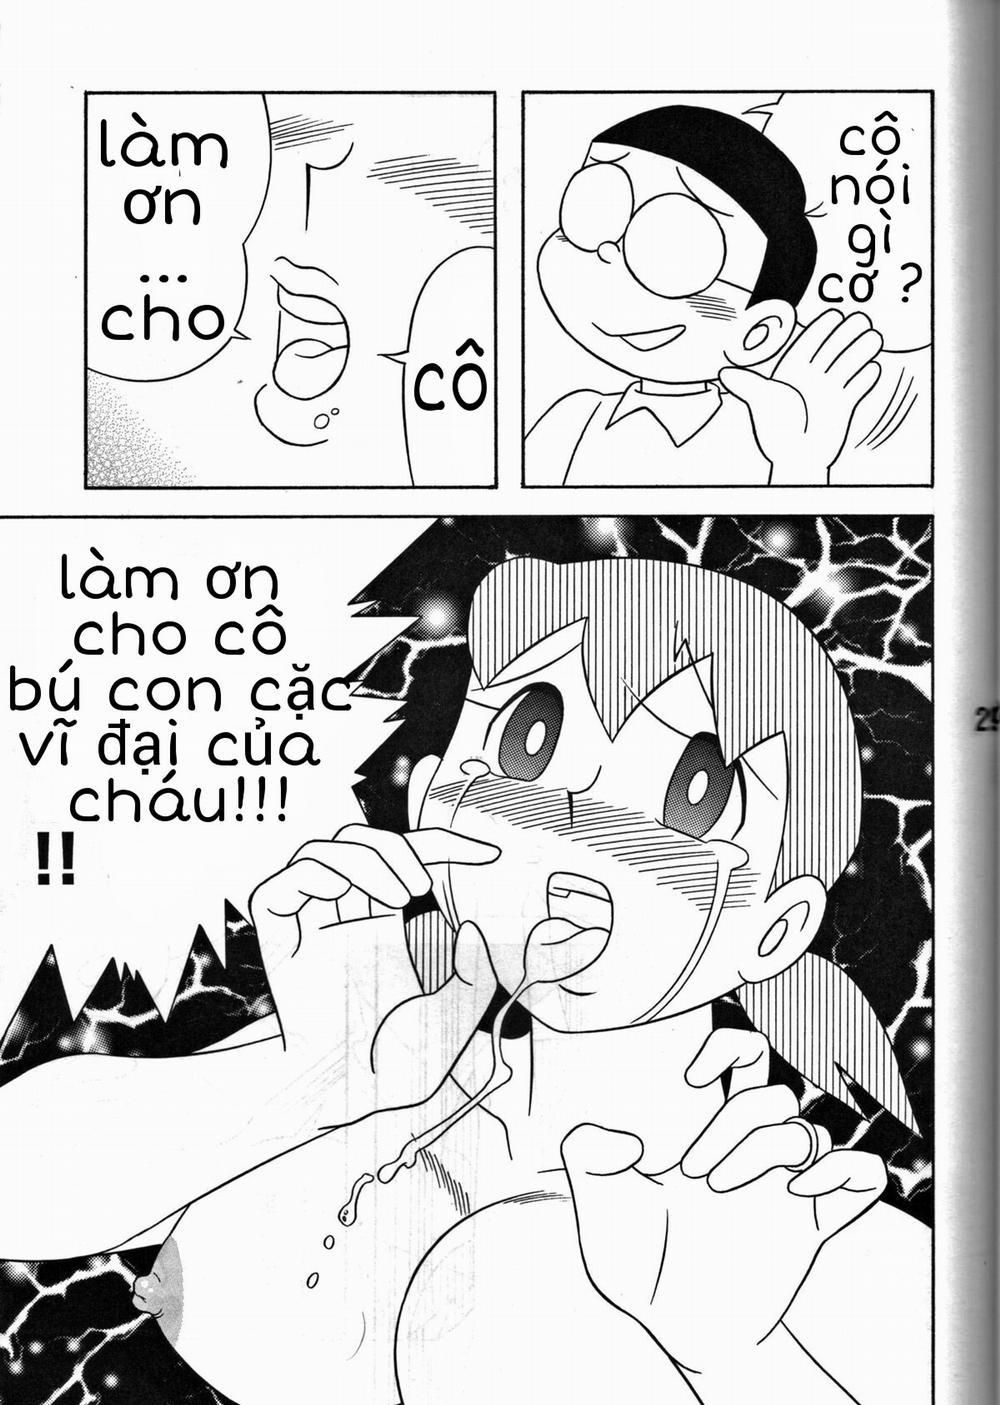 Tuyển Tập Doraemon Doujinshi 18+ Chương 7 Xuka v m g u Trang 23